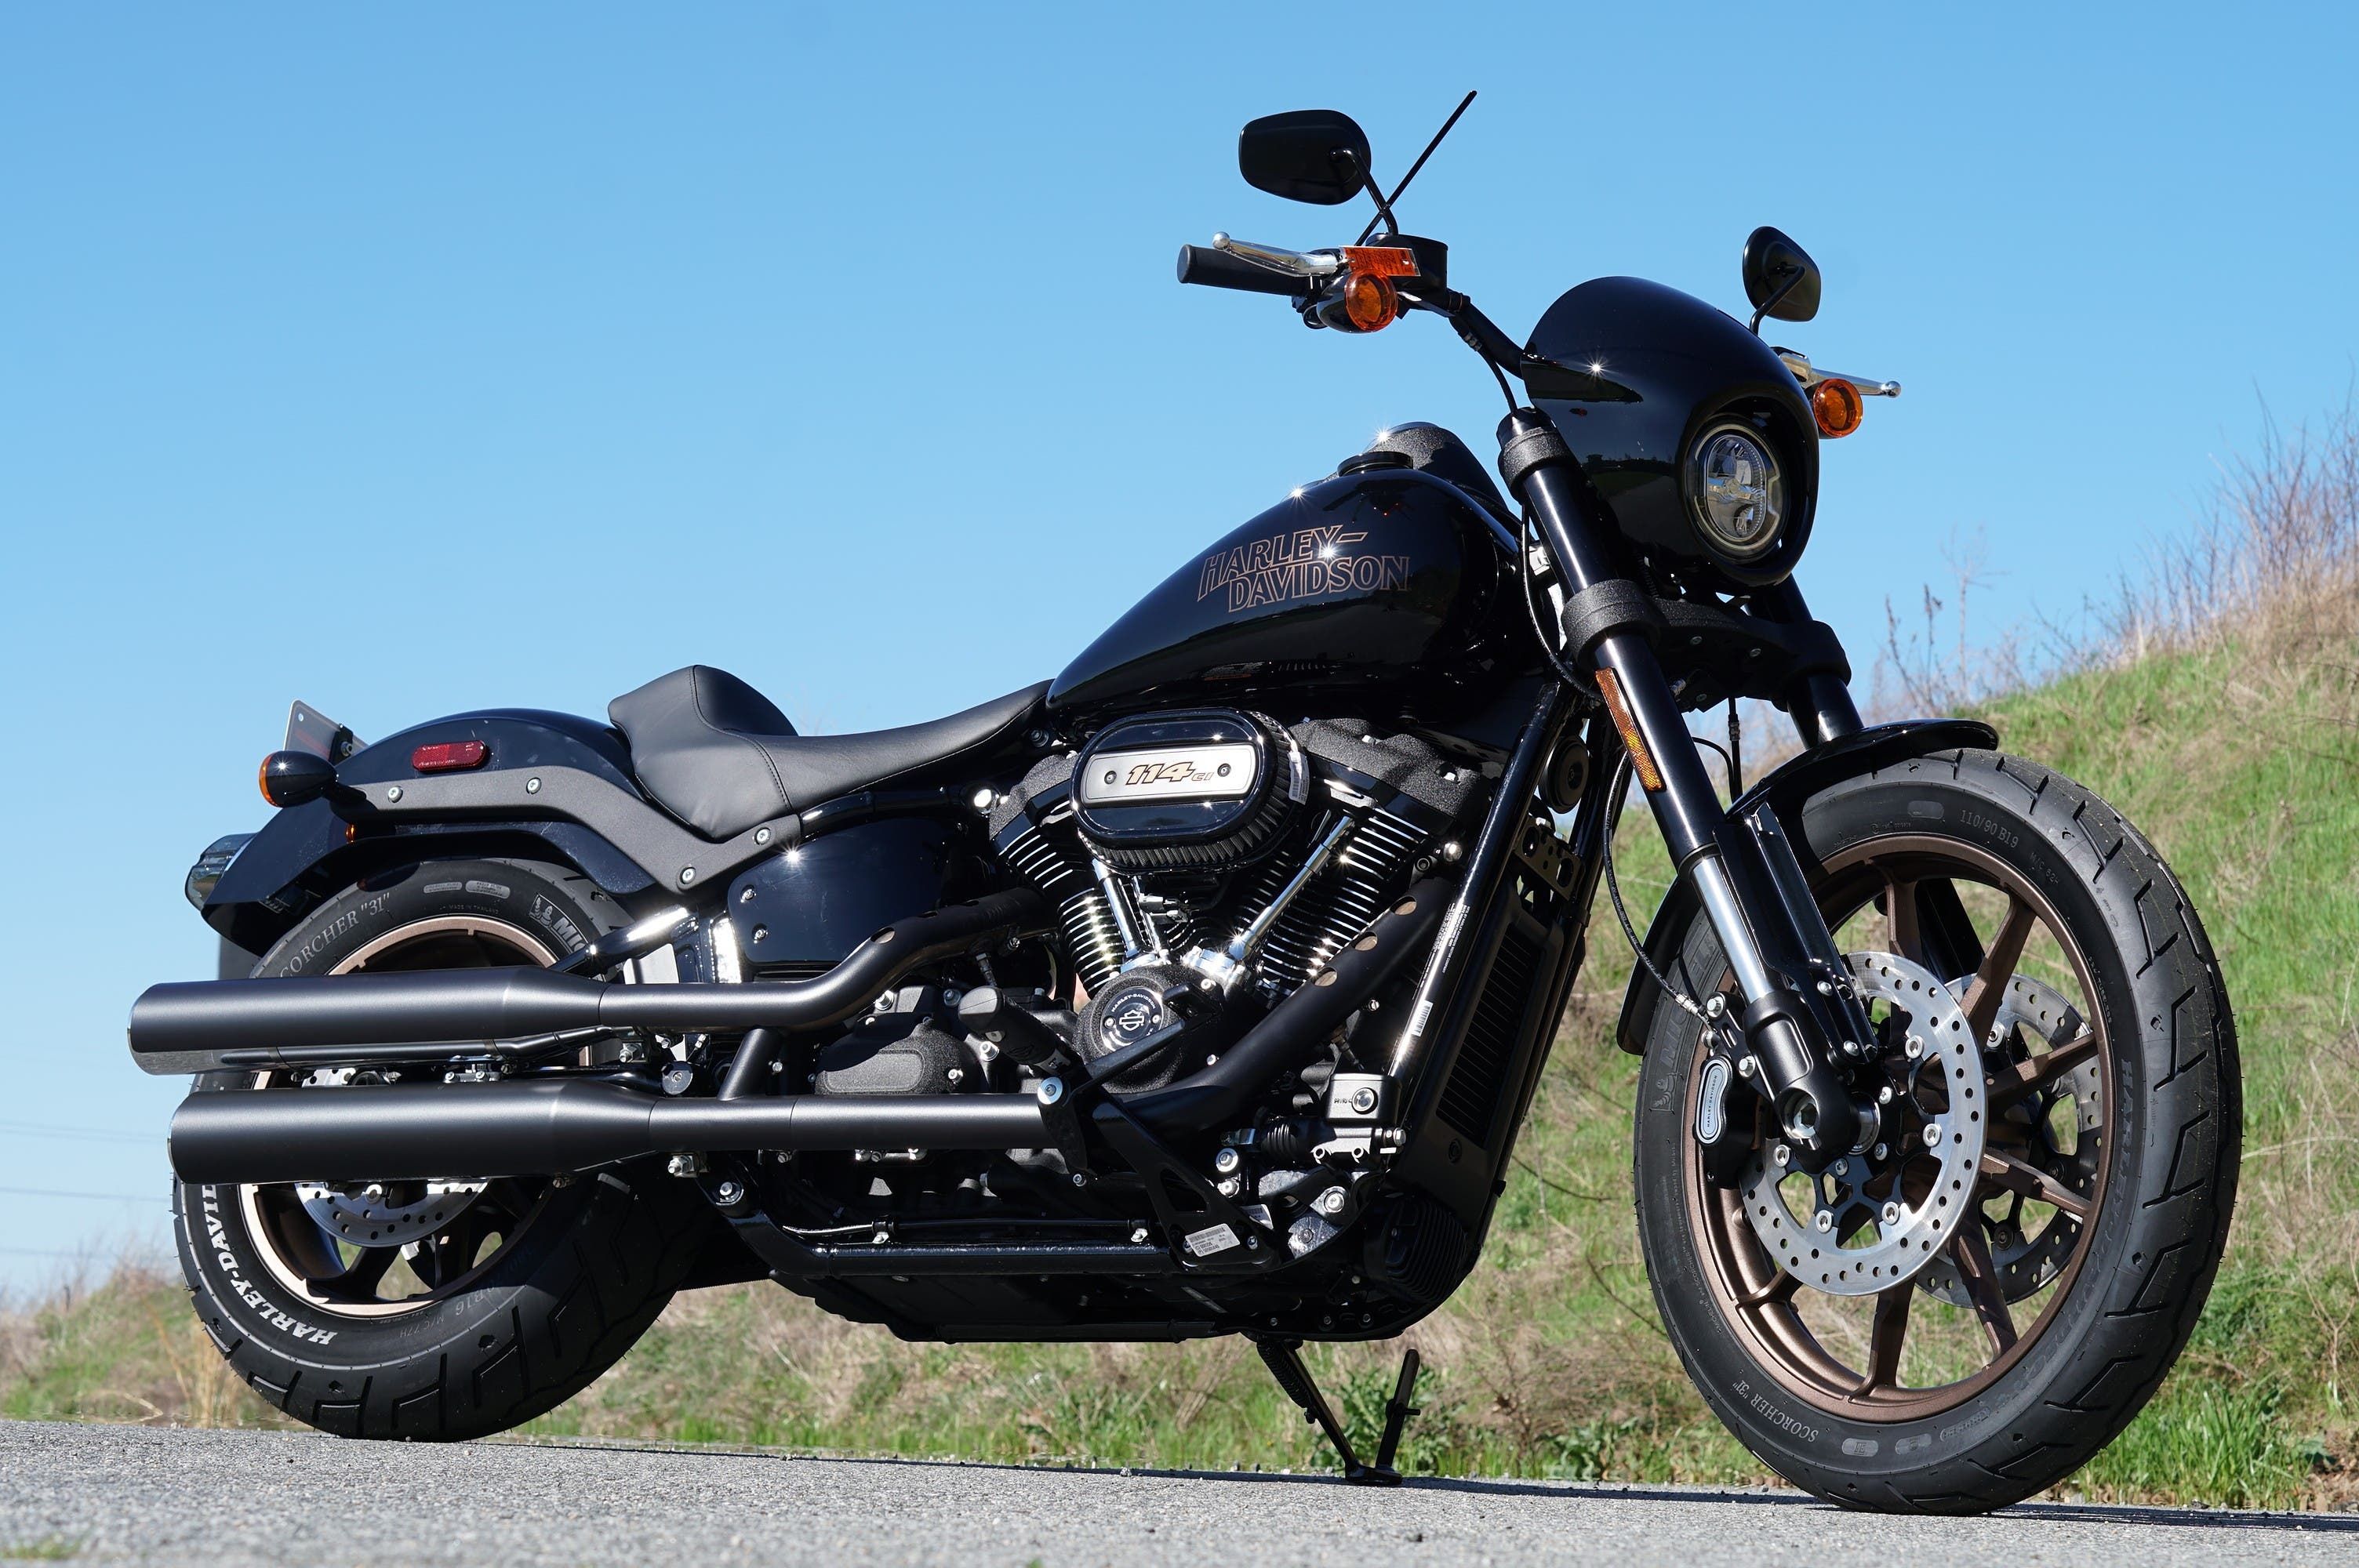 2021 Harley-Davidson Low Rider S Via Harley-Davidson Dealer